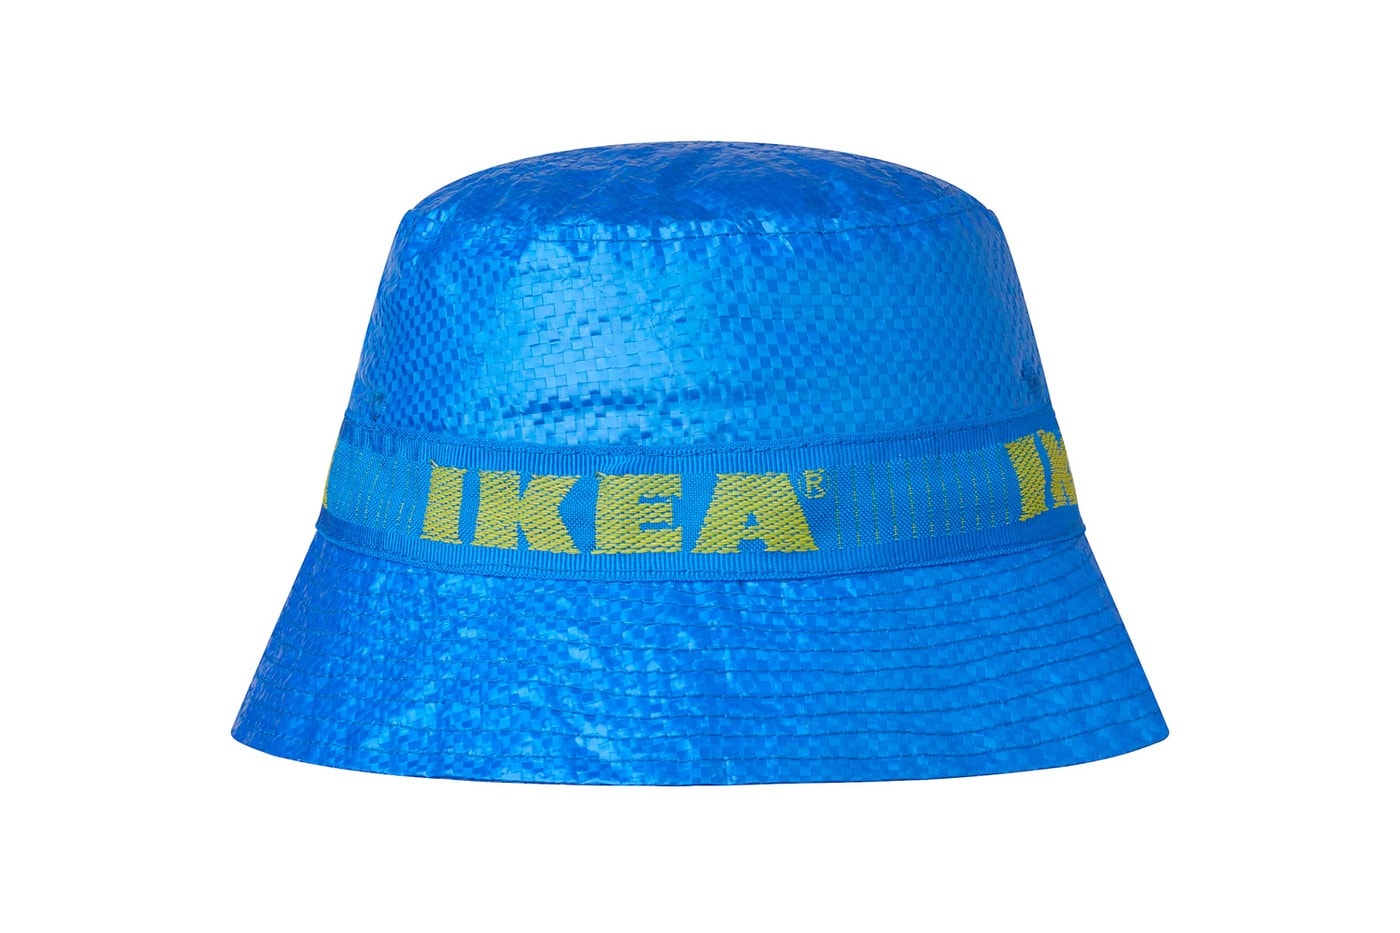 官方發售 $3.99 美金 − IKEA 正式推出「KNORVA」漁夫帽款